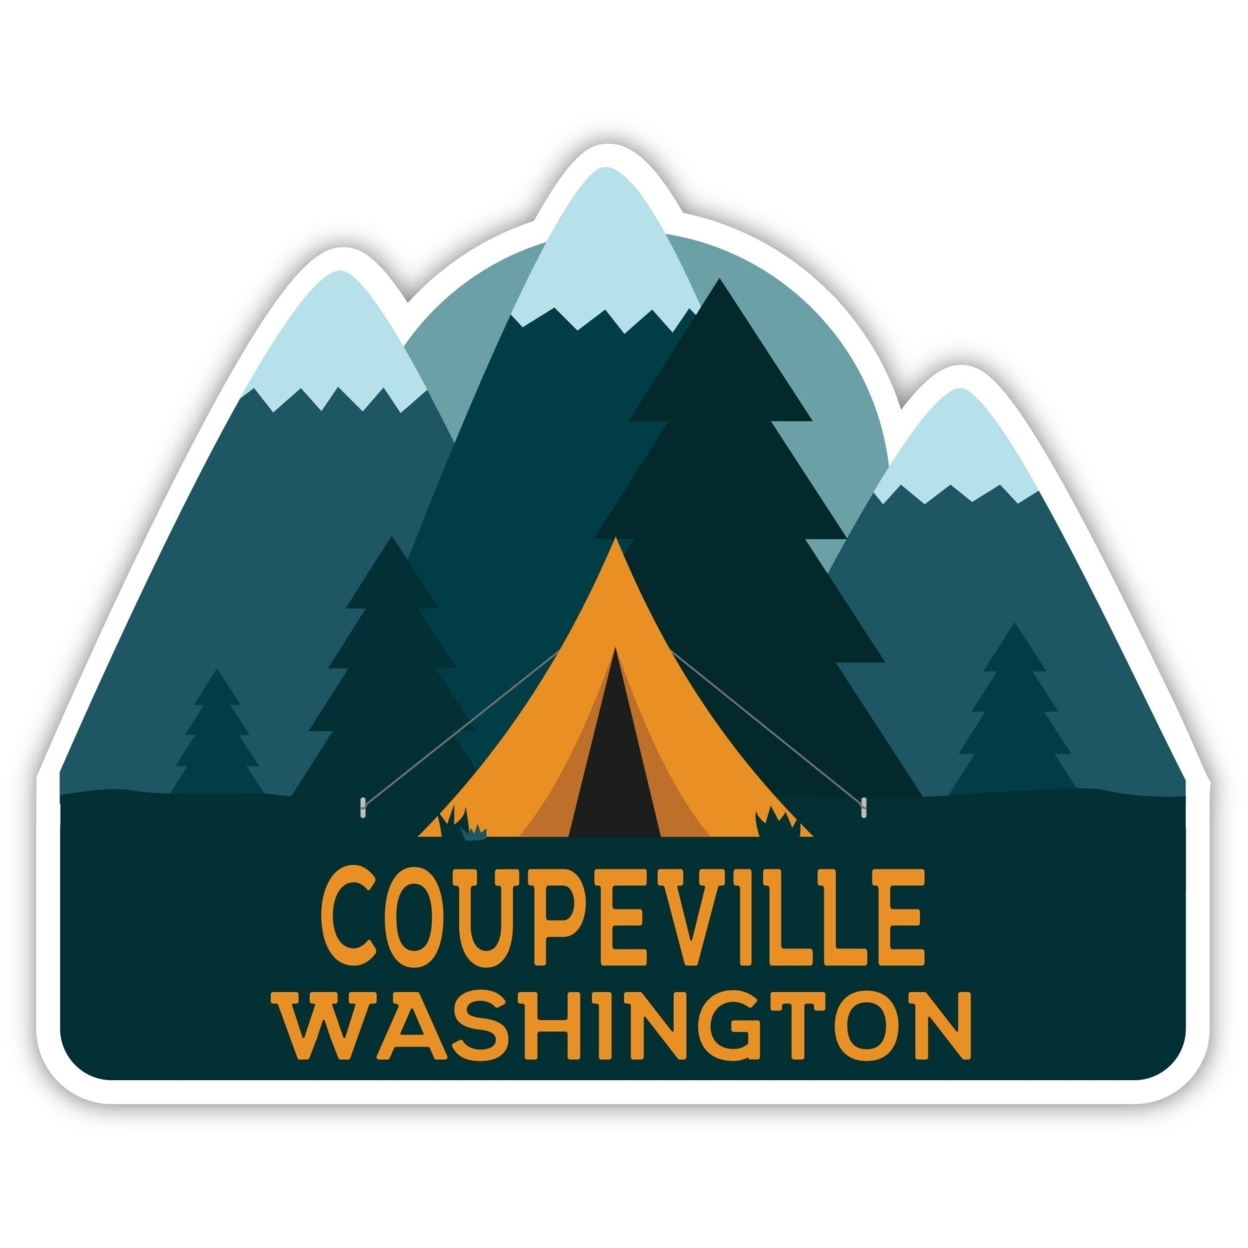 Coupeville Washington Souvenir Decorative Stickers (Choose Theme And Size) - Single Unit, 2-Inch, Tent